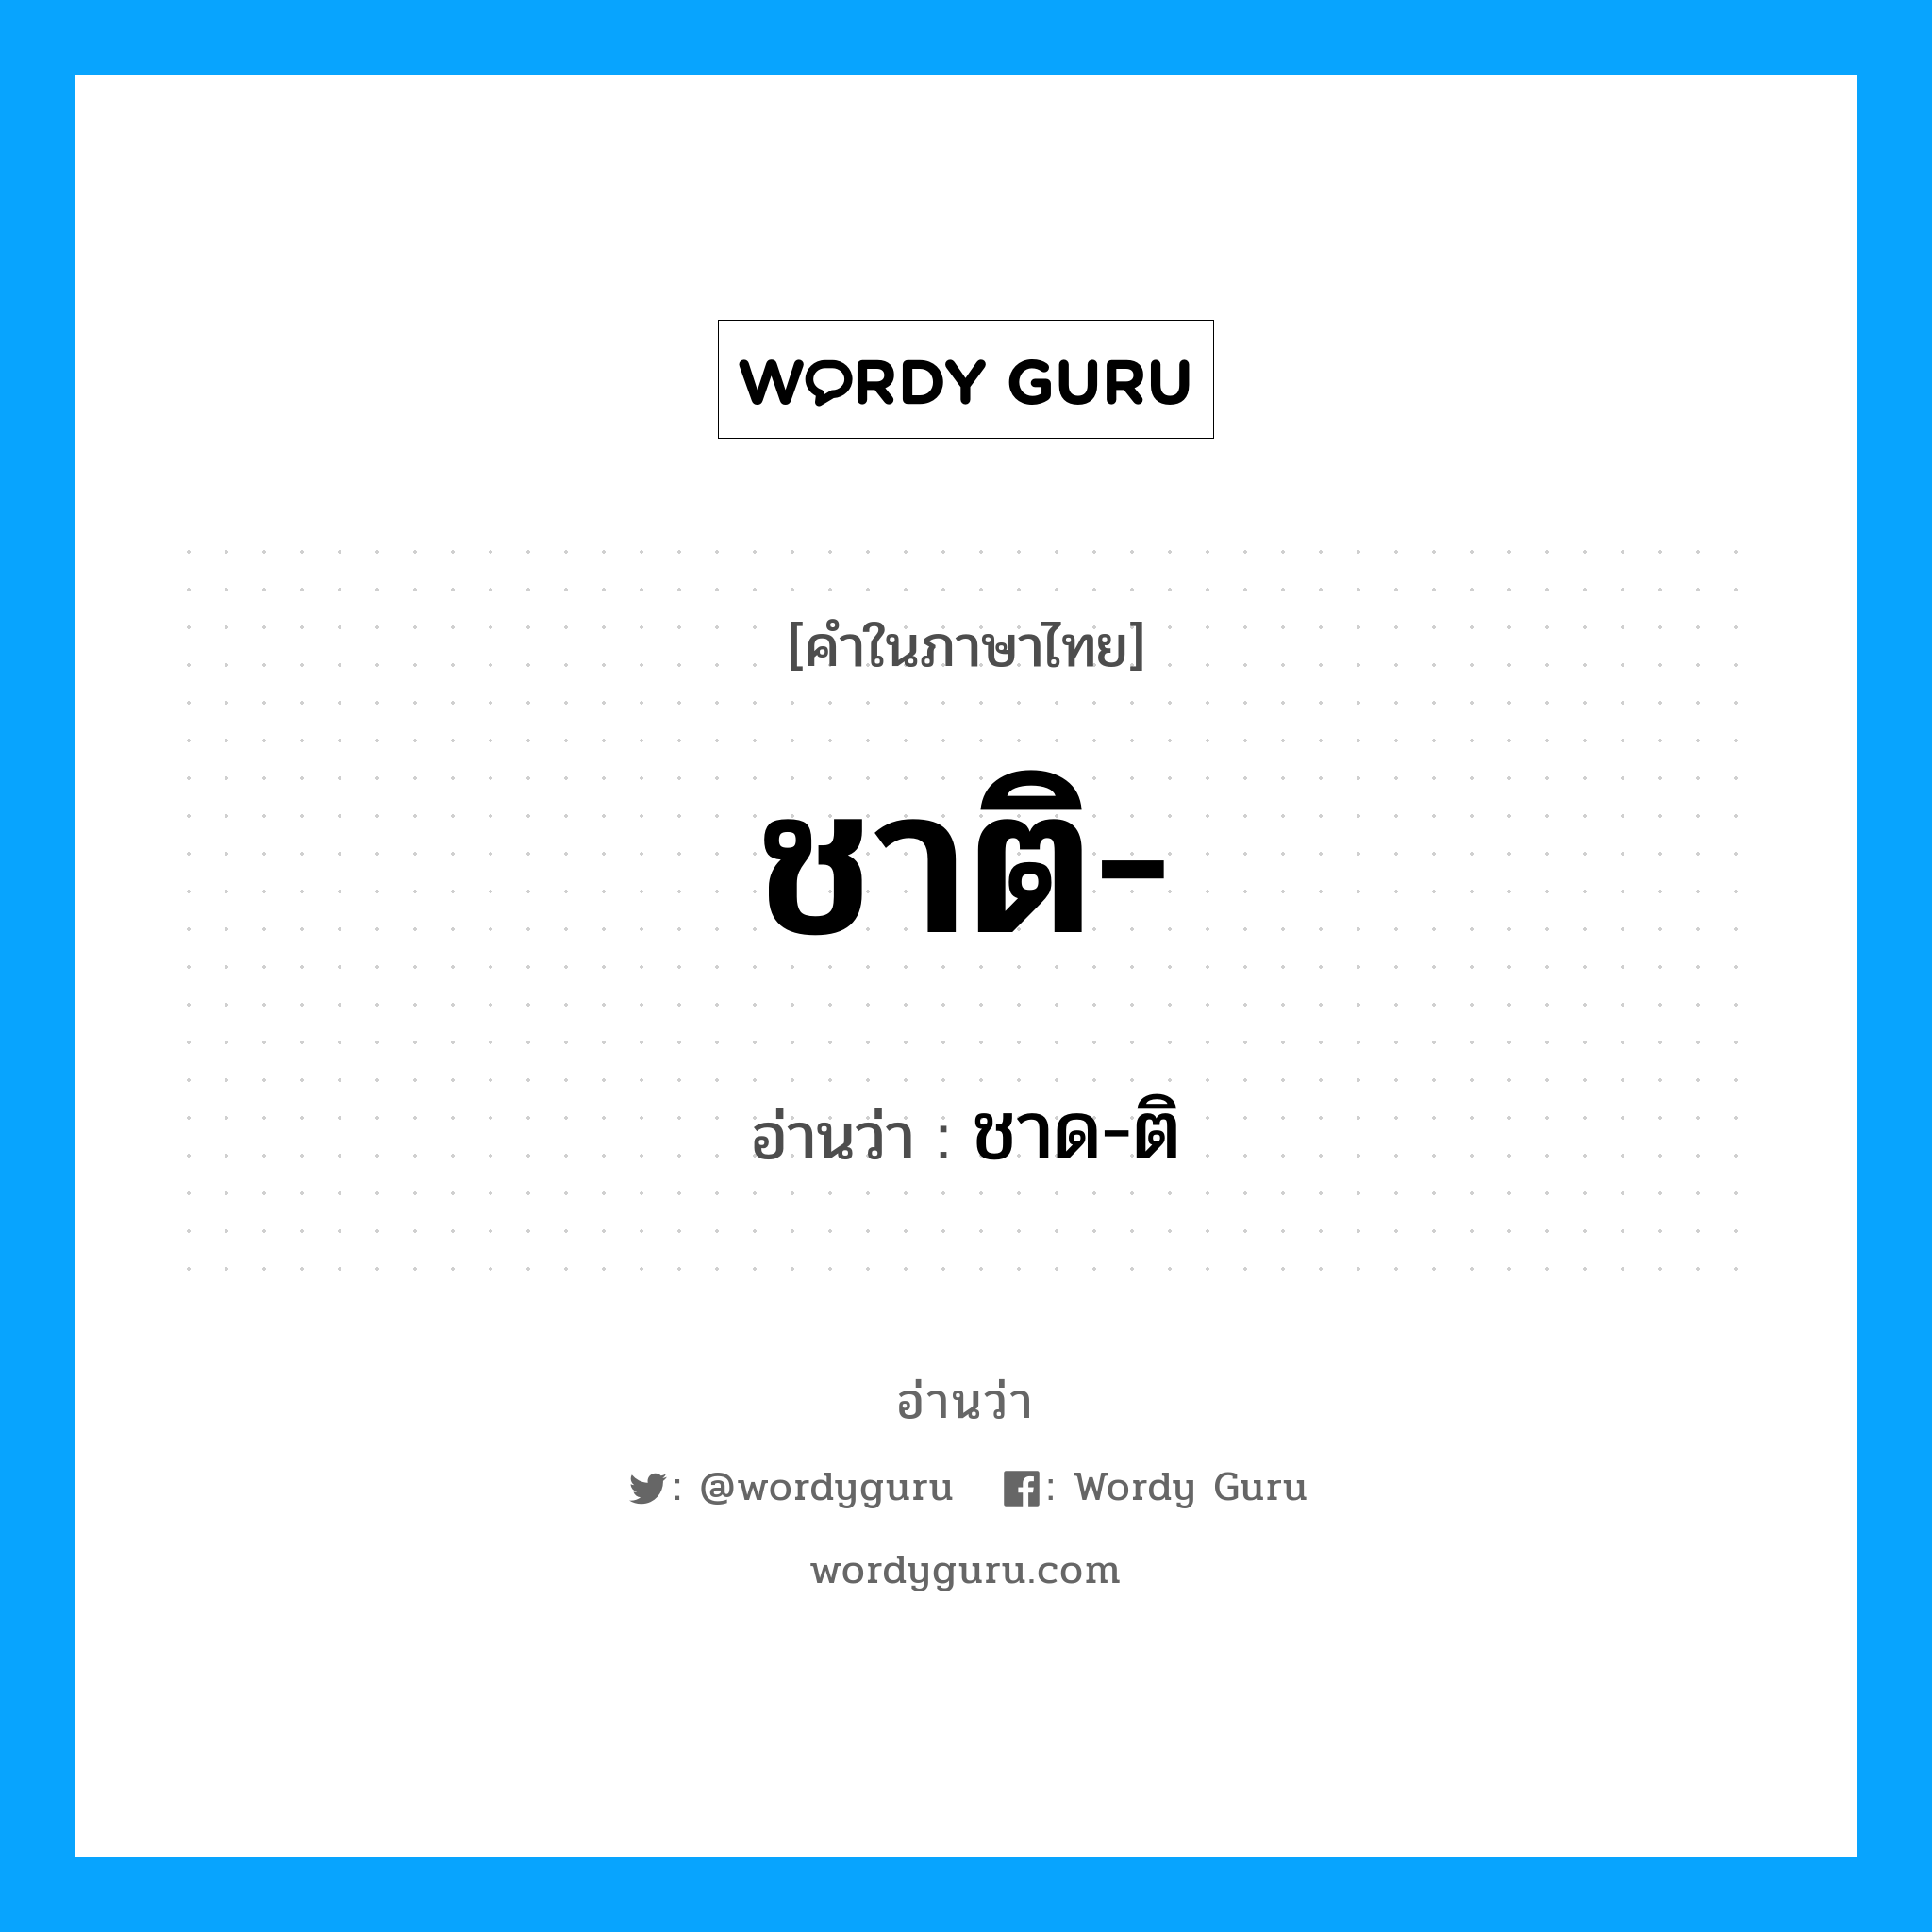 ชาด-ติ เป็นคำอ่านของคำไหน?, คำในภาษาไทย ชาด-ติ อ่านว่า ชาติ-